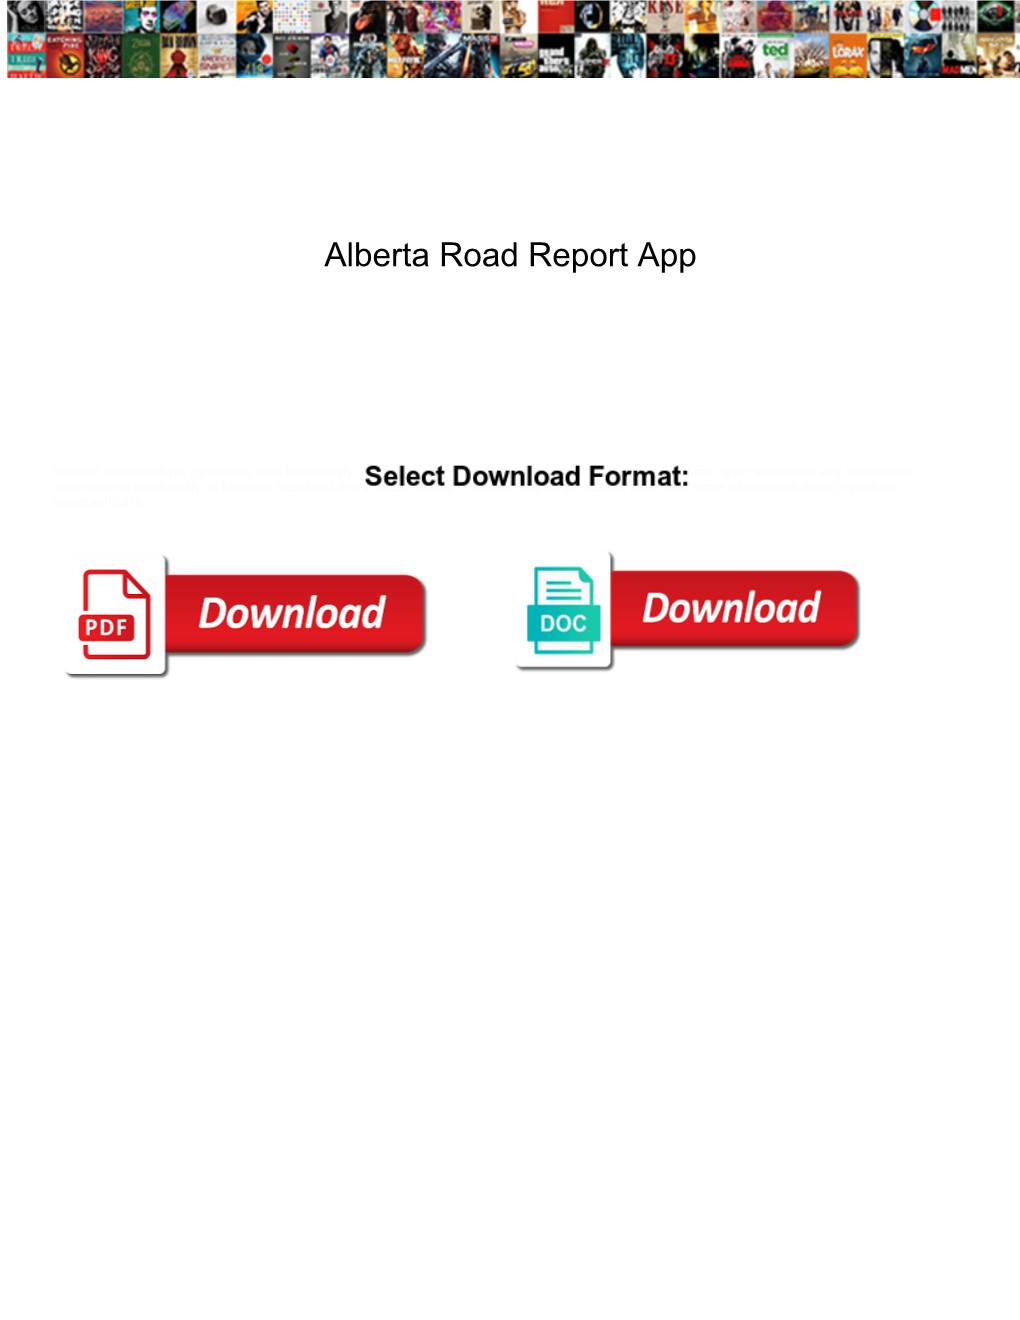 Alberta Road Report App Lane